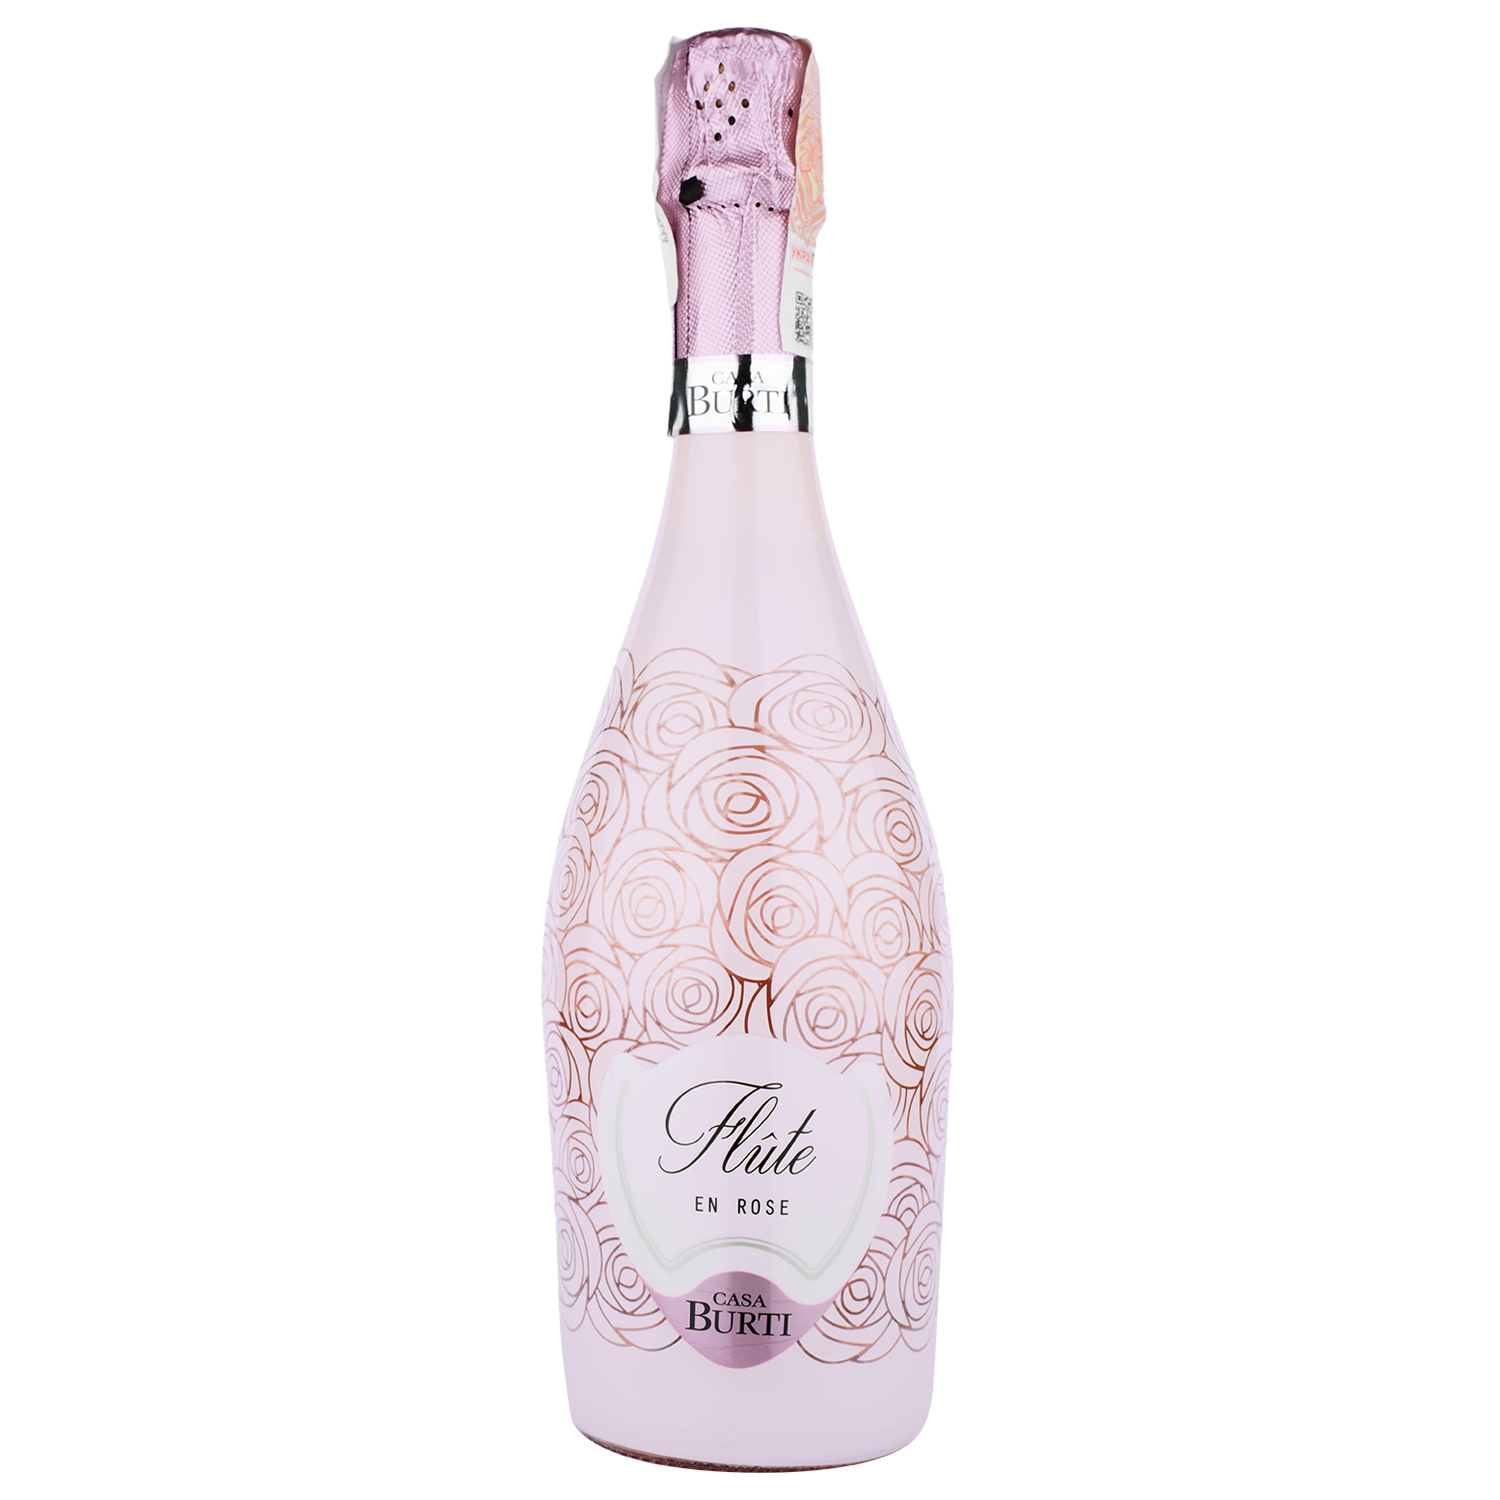 Игристое вино Casa Burti Flute Spumante Rose Extra Dry, розовое, экстра драй, 0,75 л - фото 1